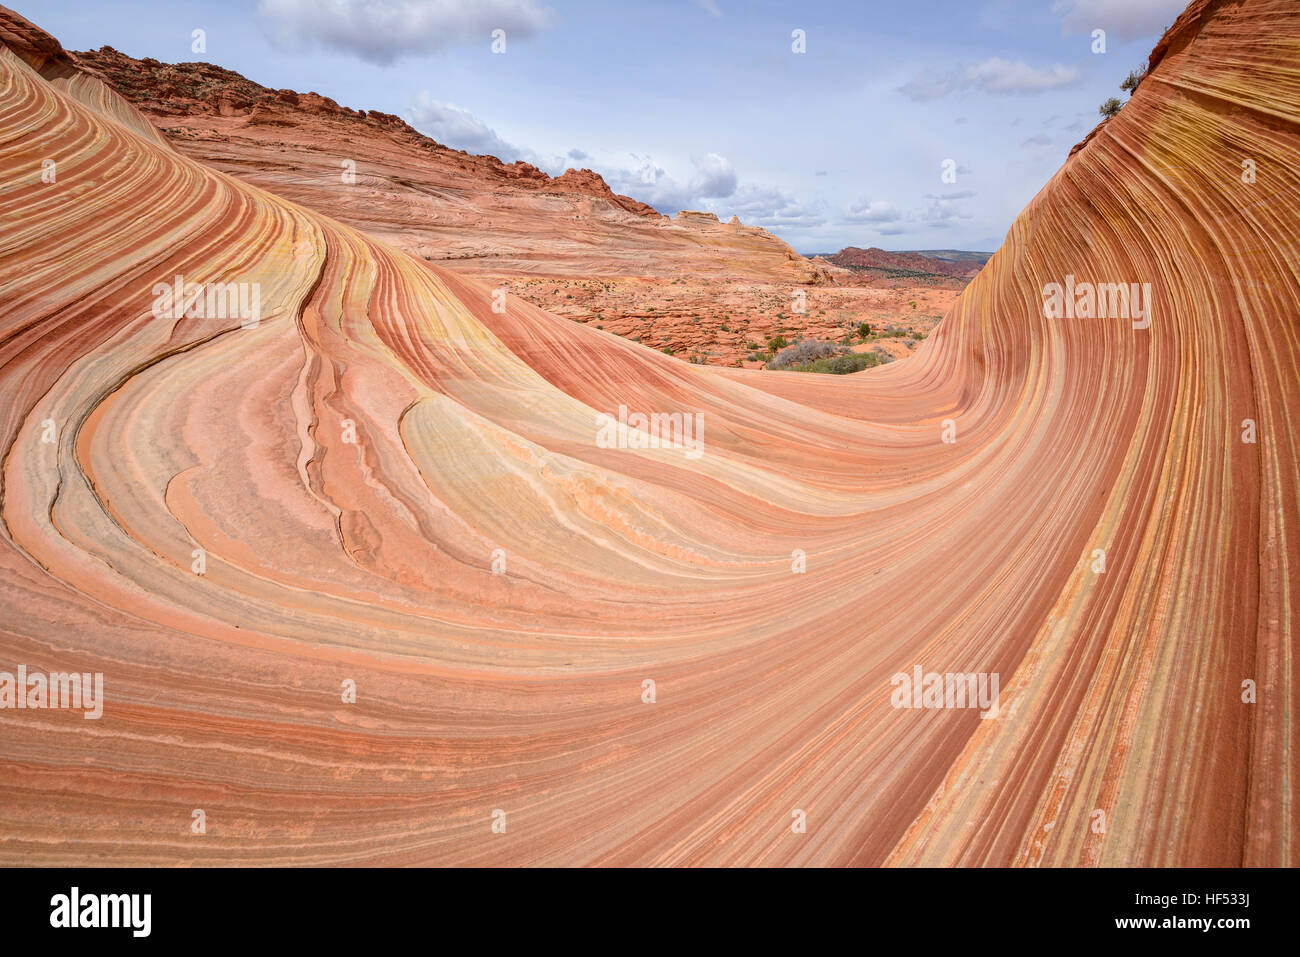 Remolinos de Rock - Curvy coloridas y rocas de piedra arenisca en la ola, una espectacular formación rocosa arenisca de erosión, Arizona-Utah, EE.UU. Foto de stock